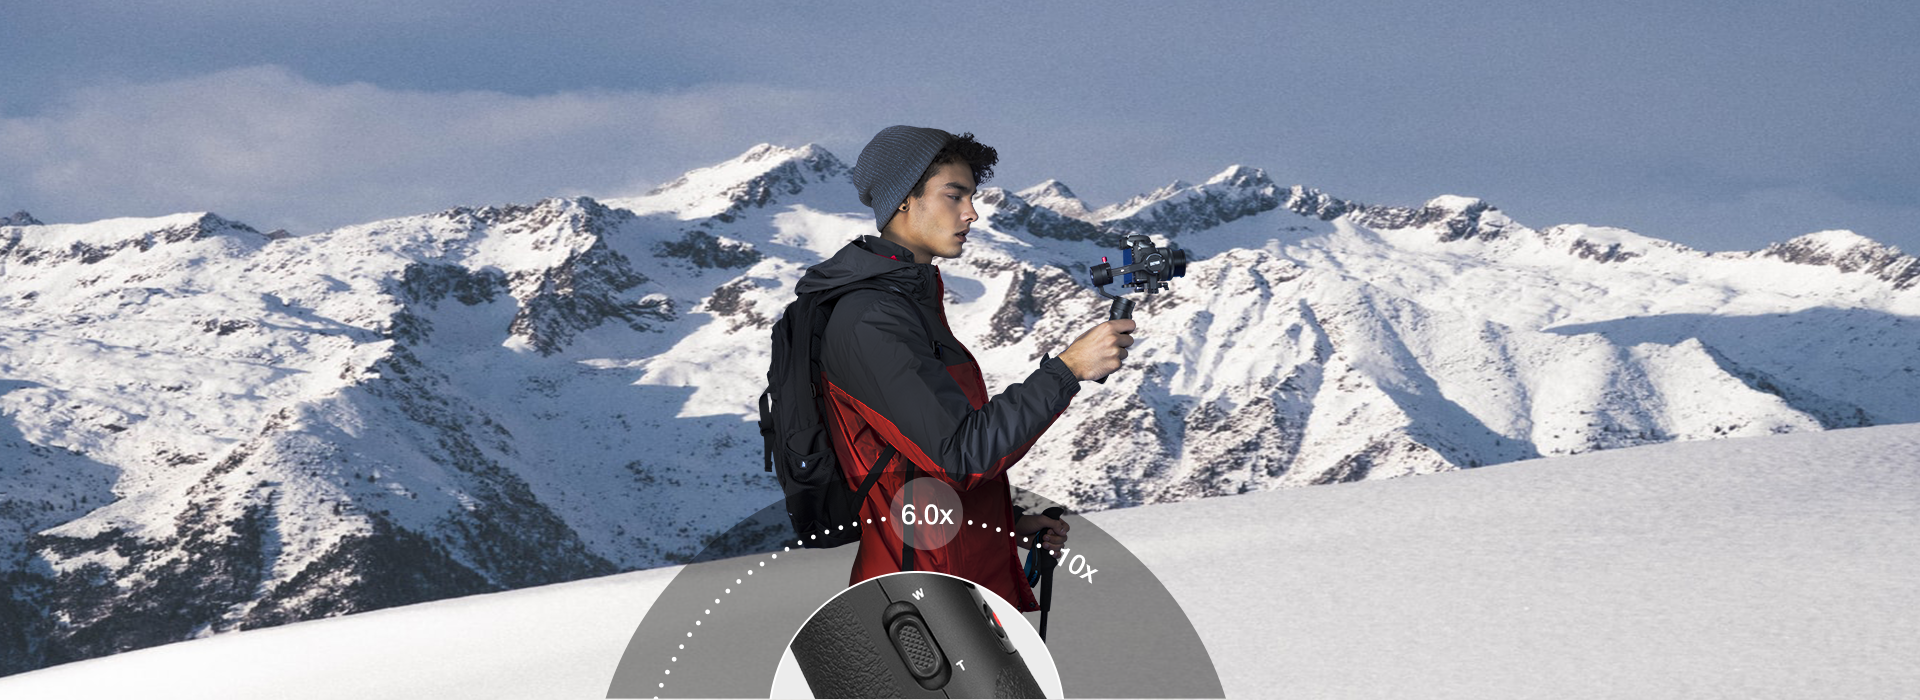 Crane M2 - Smartphone & Camera Gimbal Handheld Stabilizer | ZHIYUN